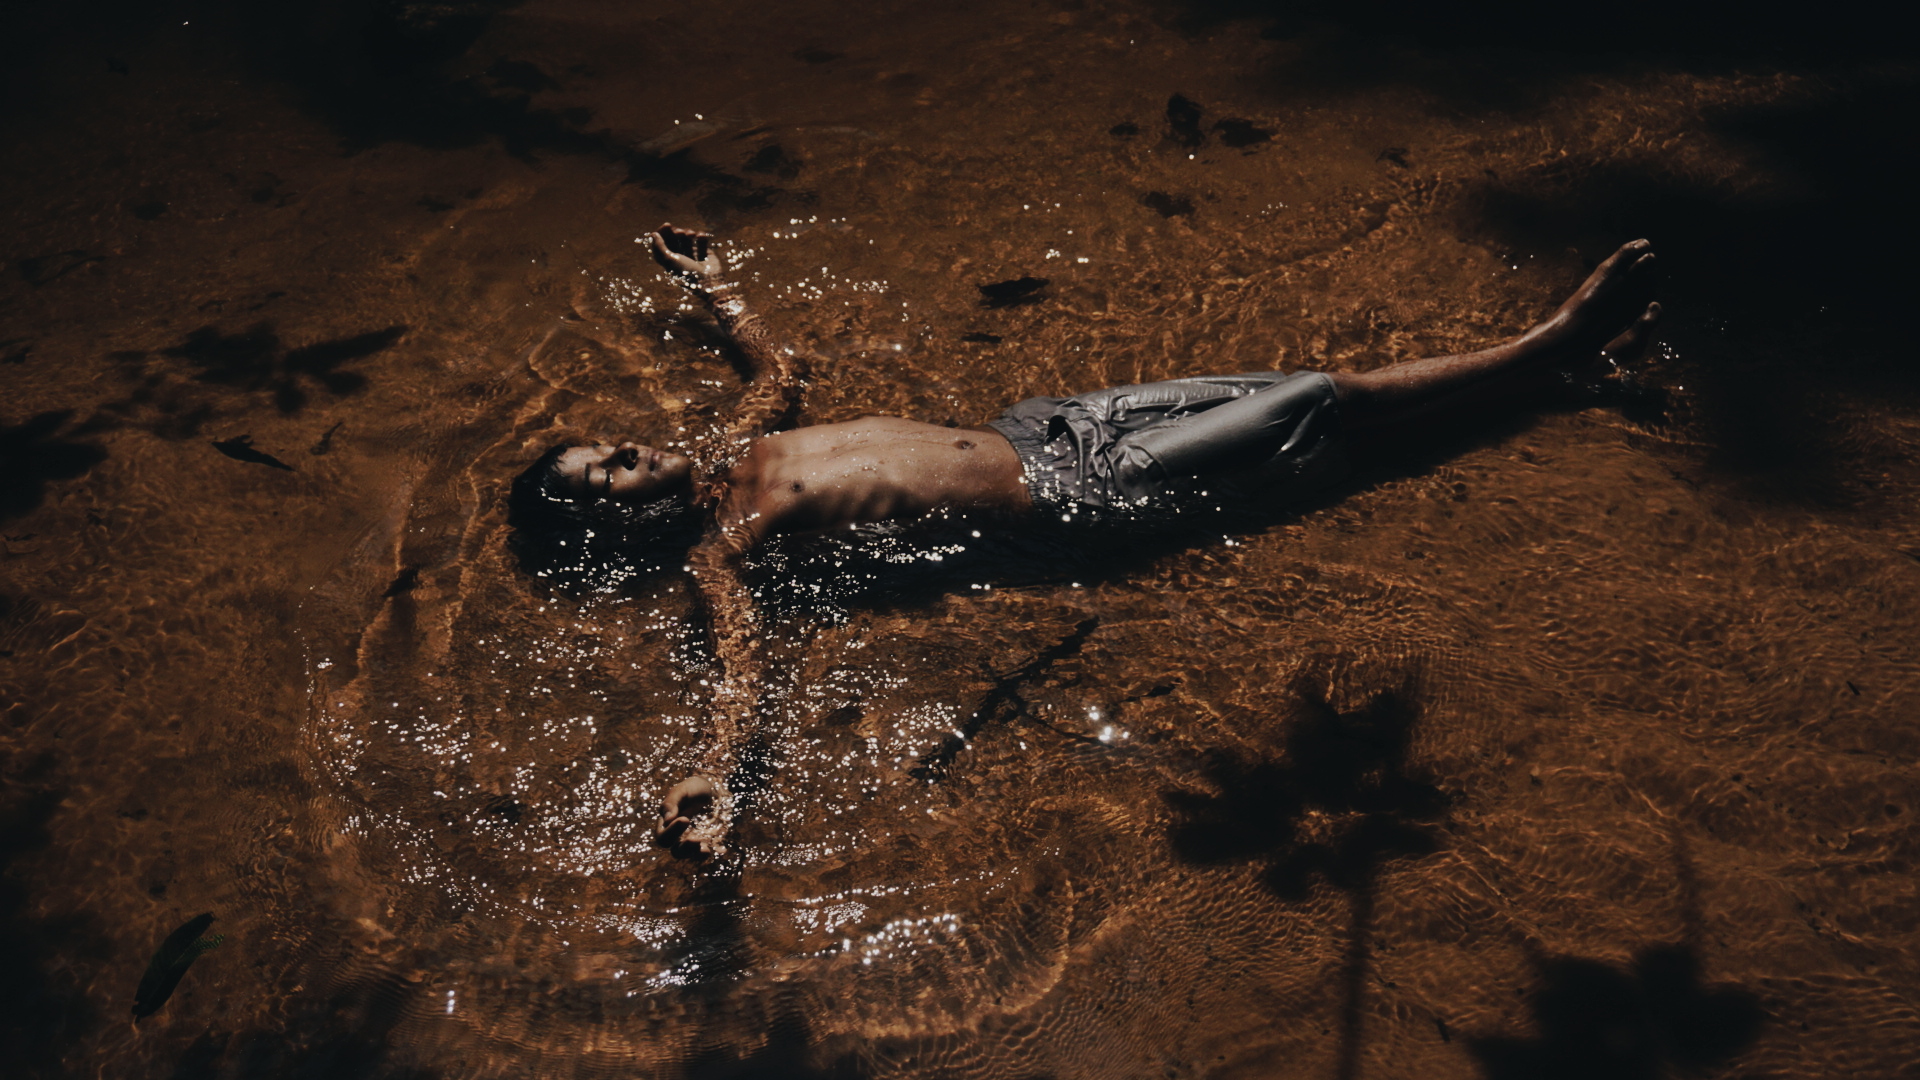 O menino Abner toma banho no Rio das Morte, fonte de subsistência do Assentamento Alegre, em Riachão, Maranhão, 2019. Foto: Andressa Zumpano